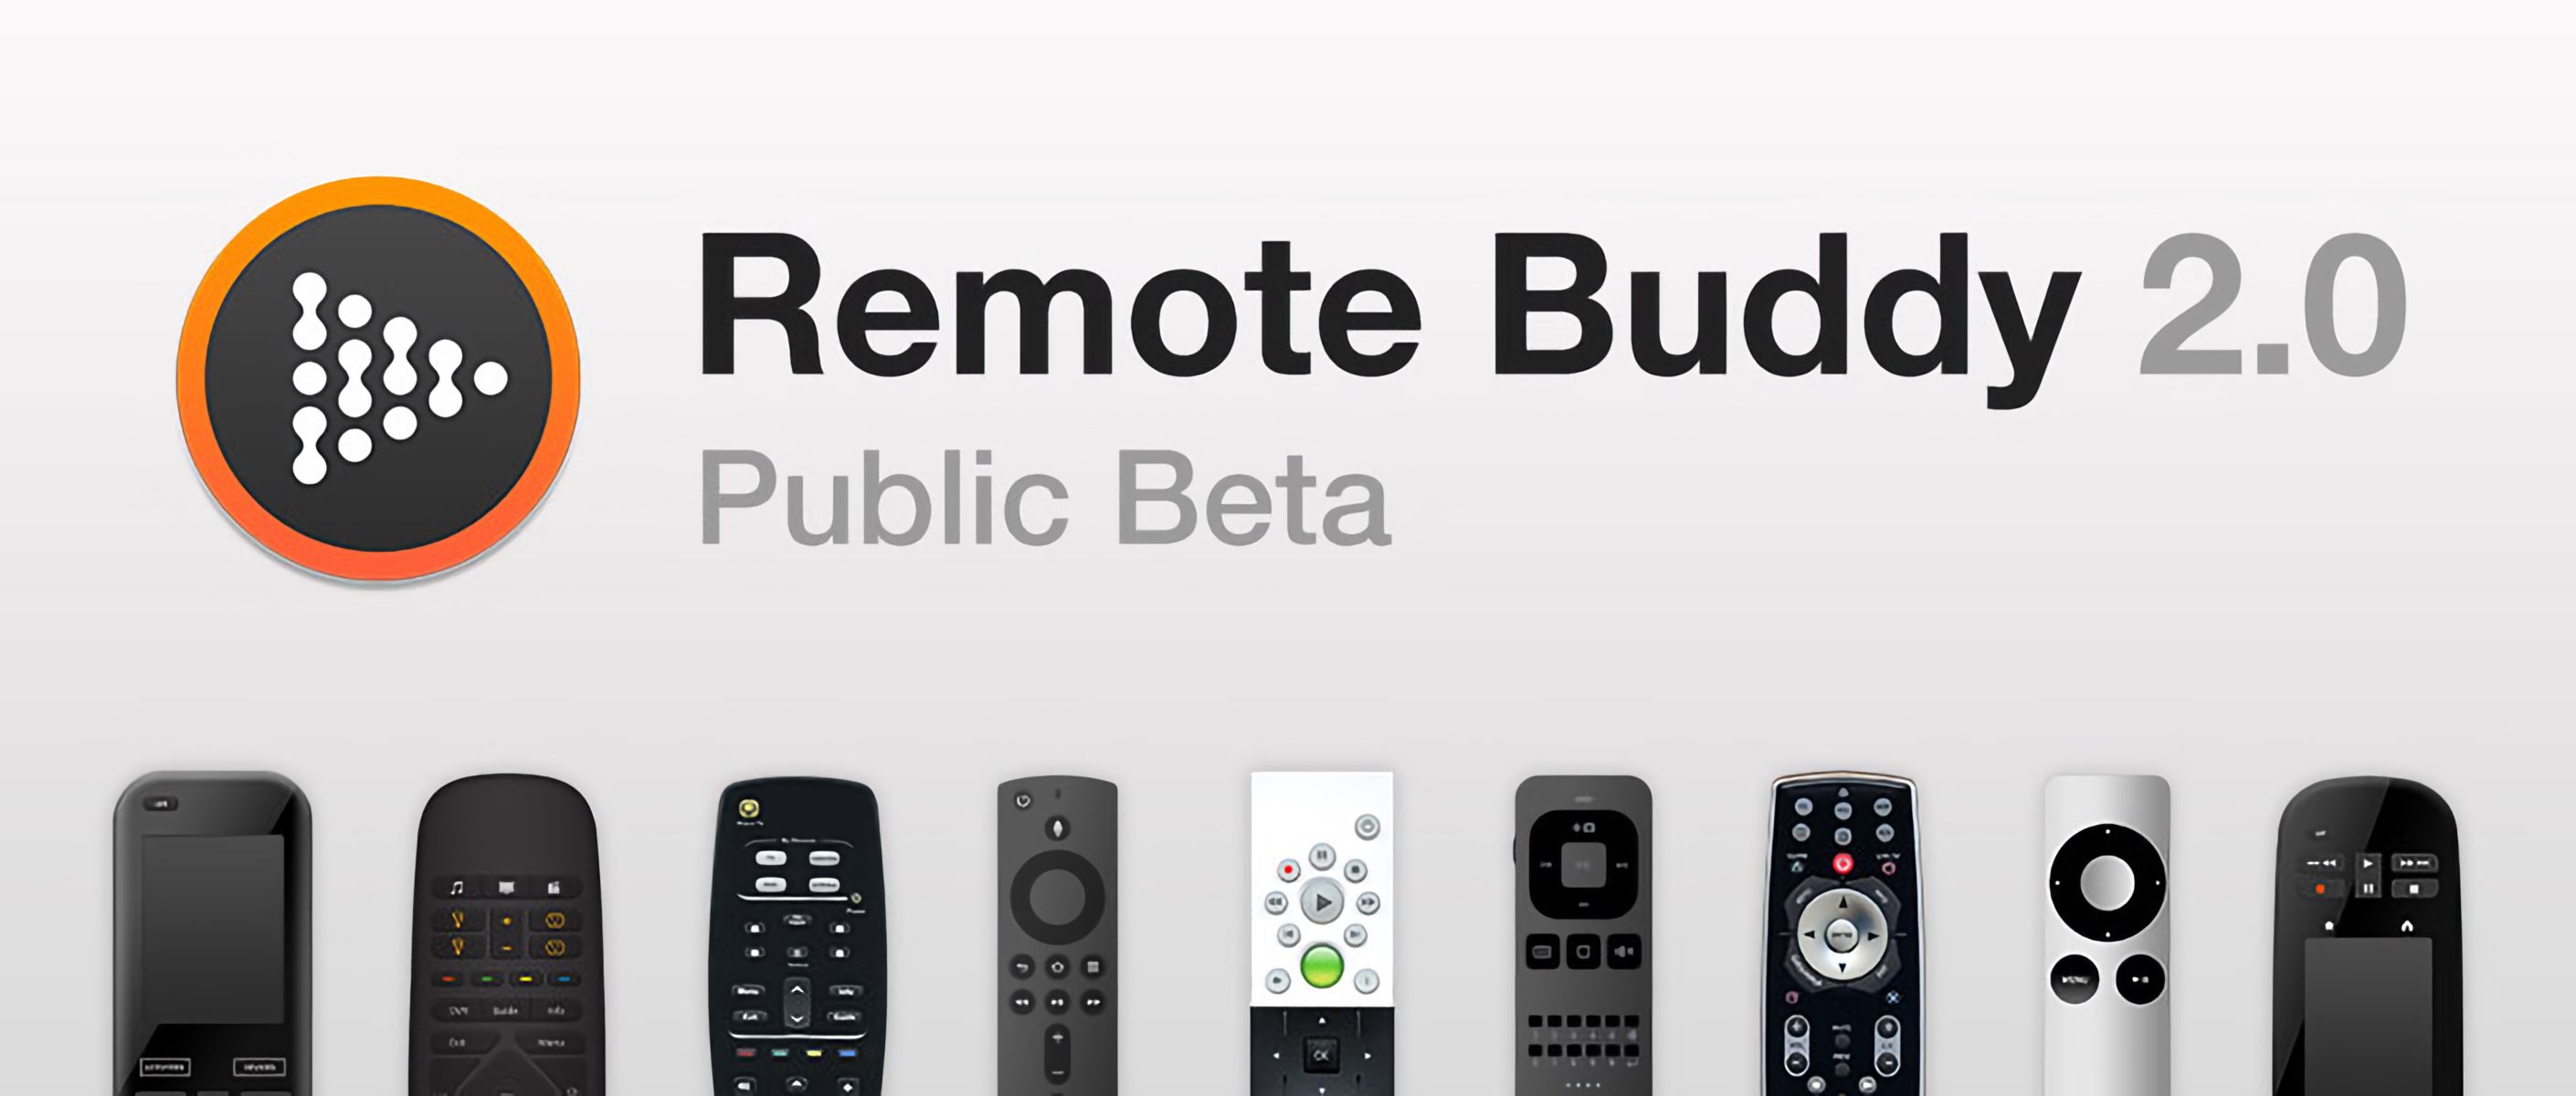 remote buddy mac